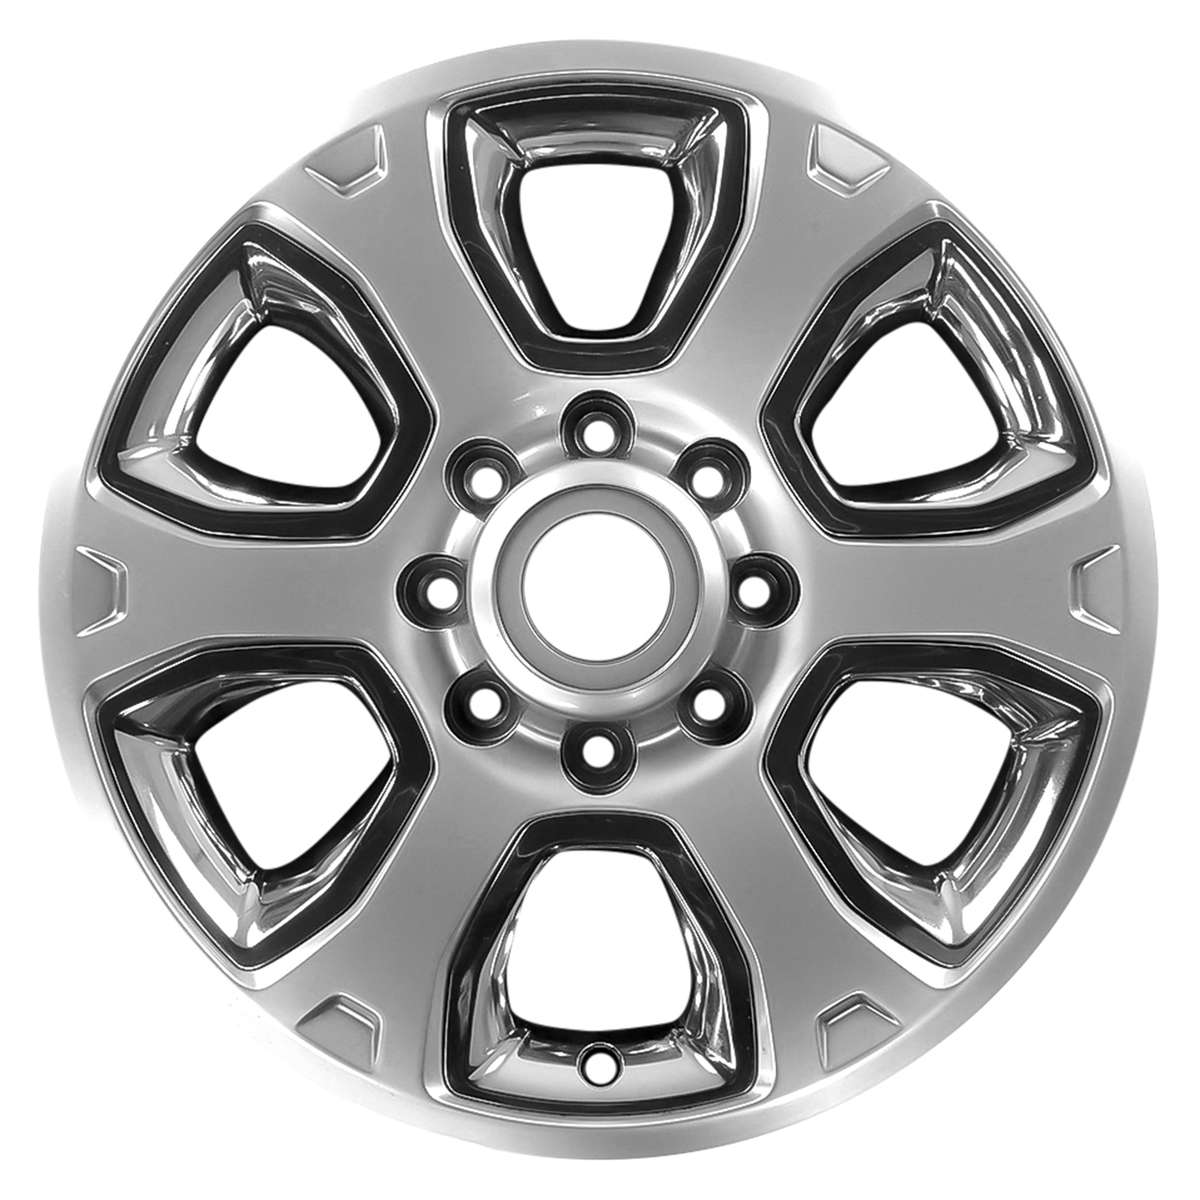 2015 Dodge RAM 3500 20" OEM Wheel Rim W2477H